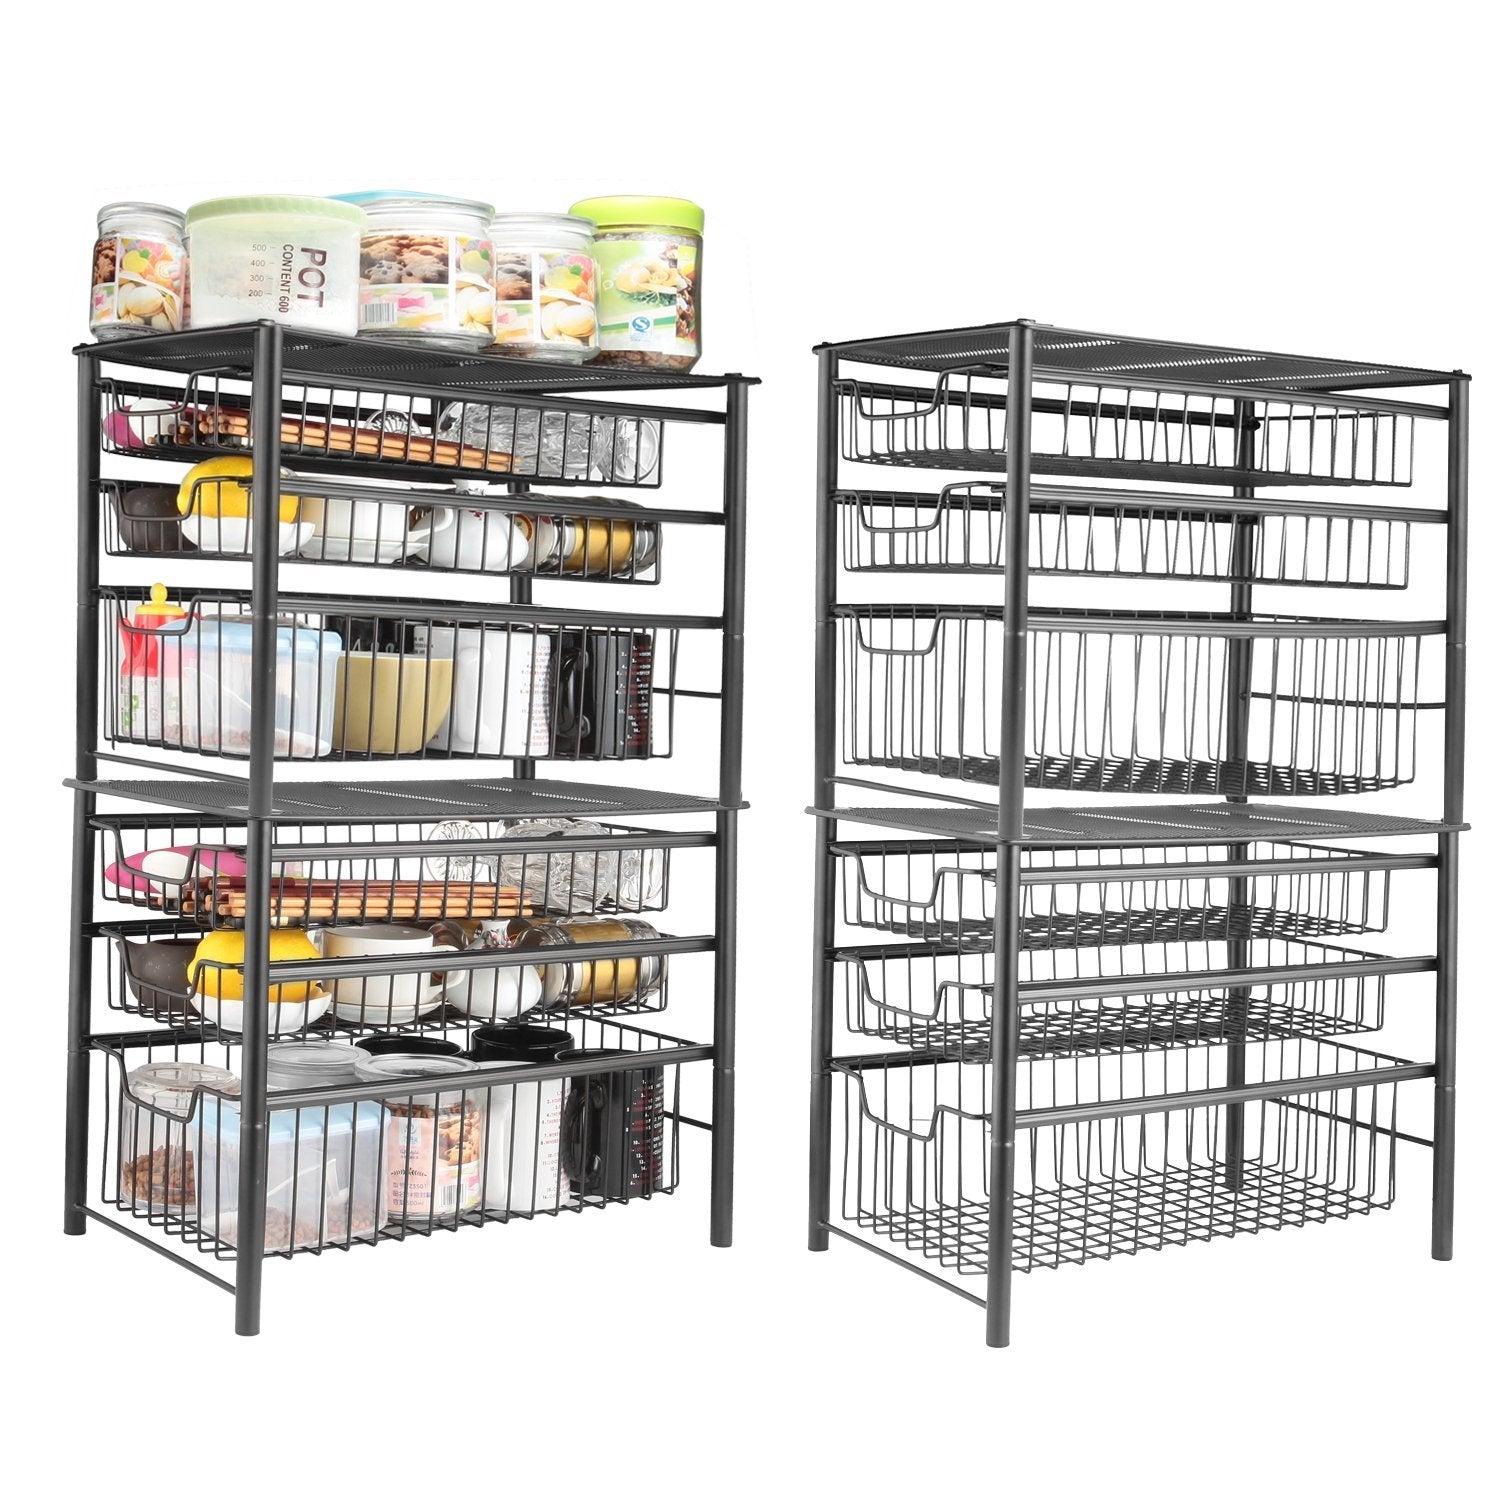 Buy now 3s sliding basket organizer drawer cabinet storage drawers under bathroom kitchen sink organizer tier black